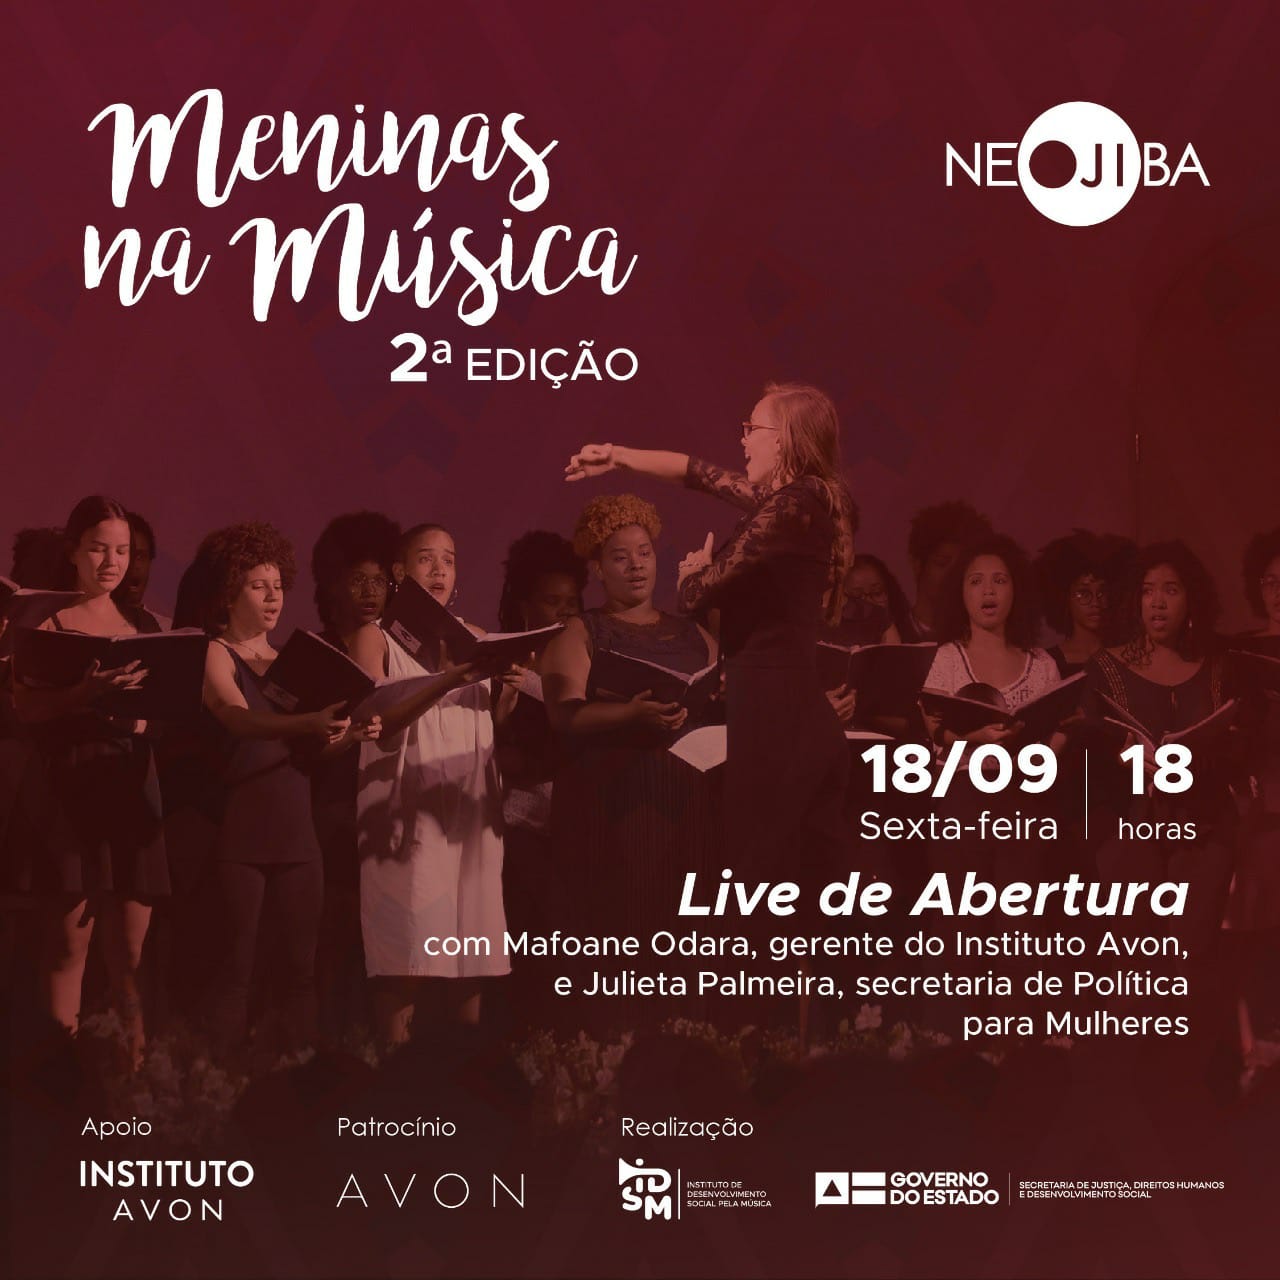 NEOJIBA realiza live de lançamento do projeto Meninas na Música nesta sexta, 18